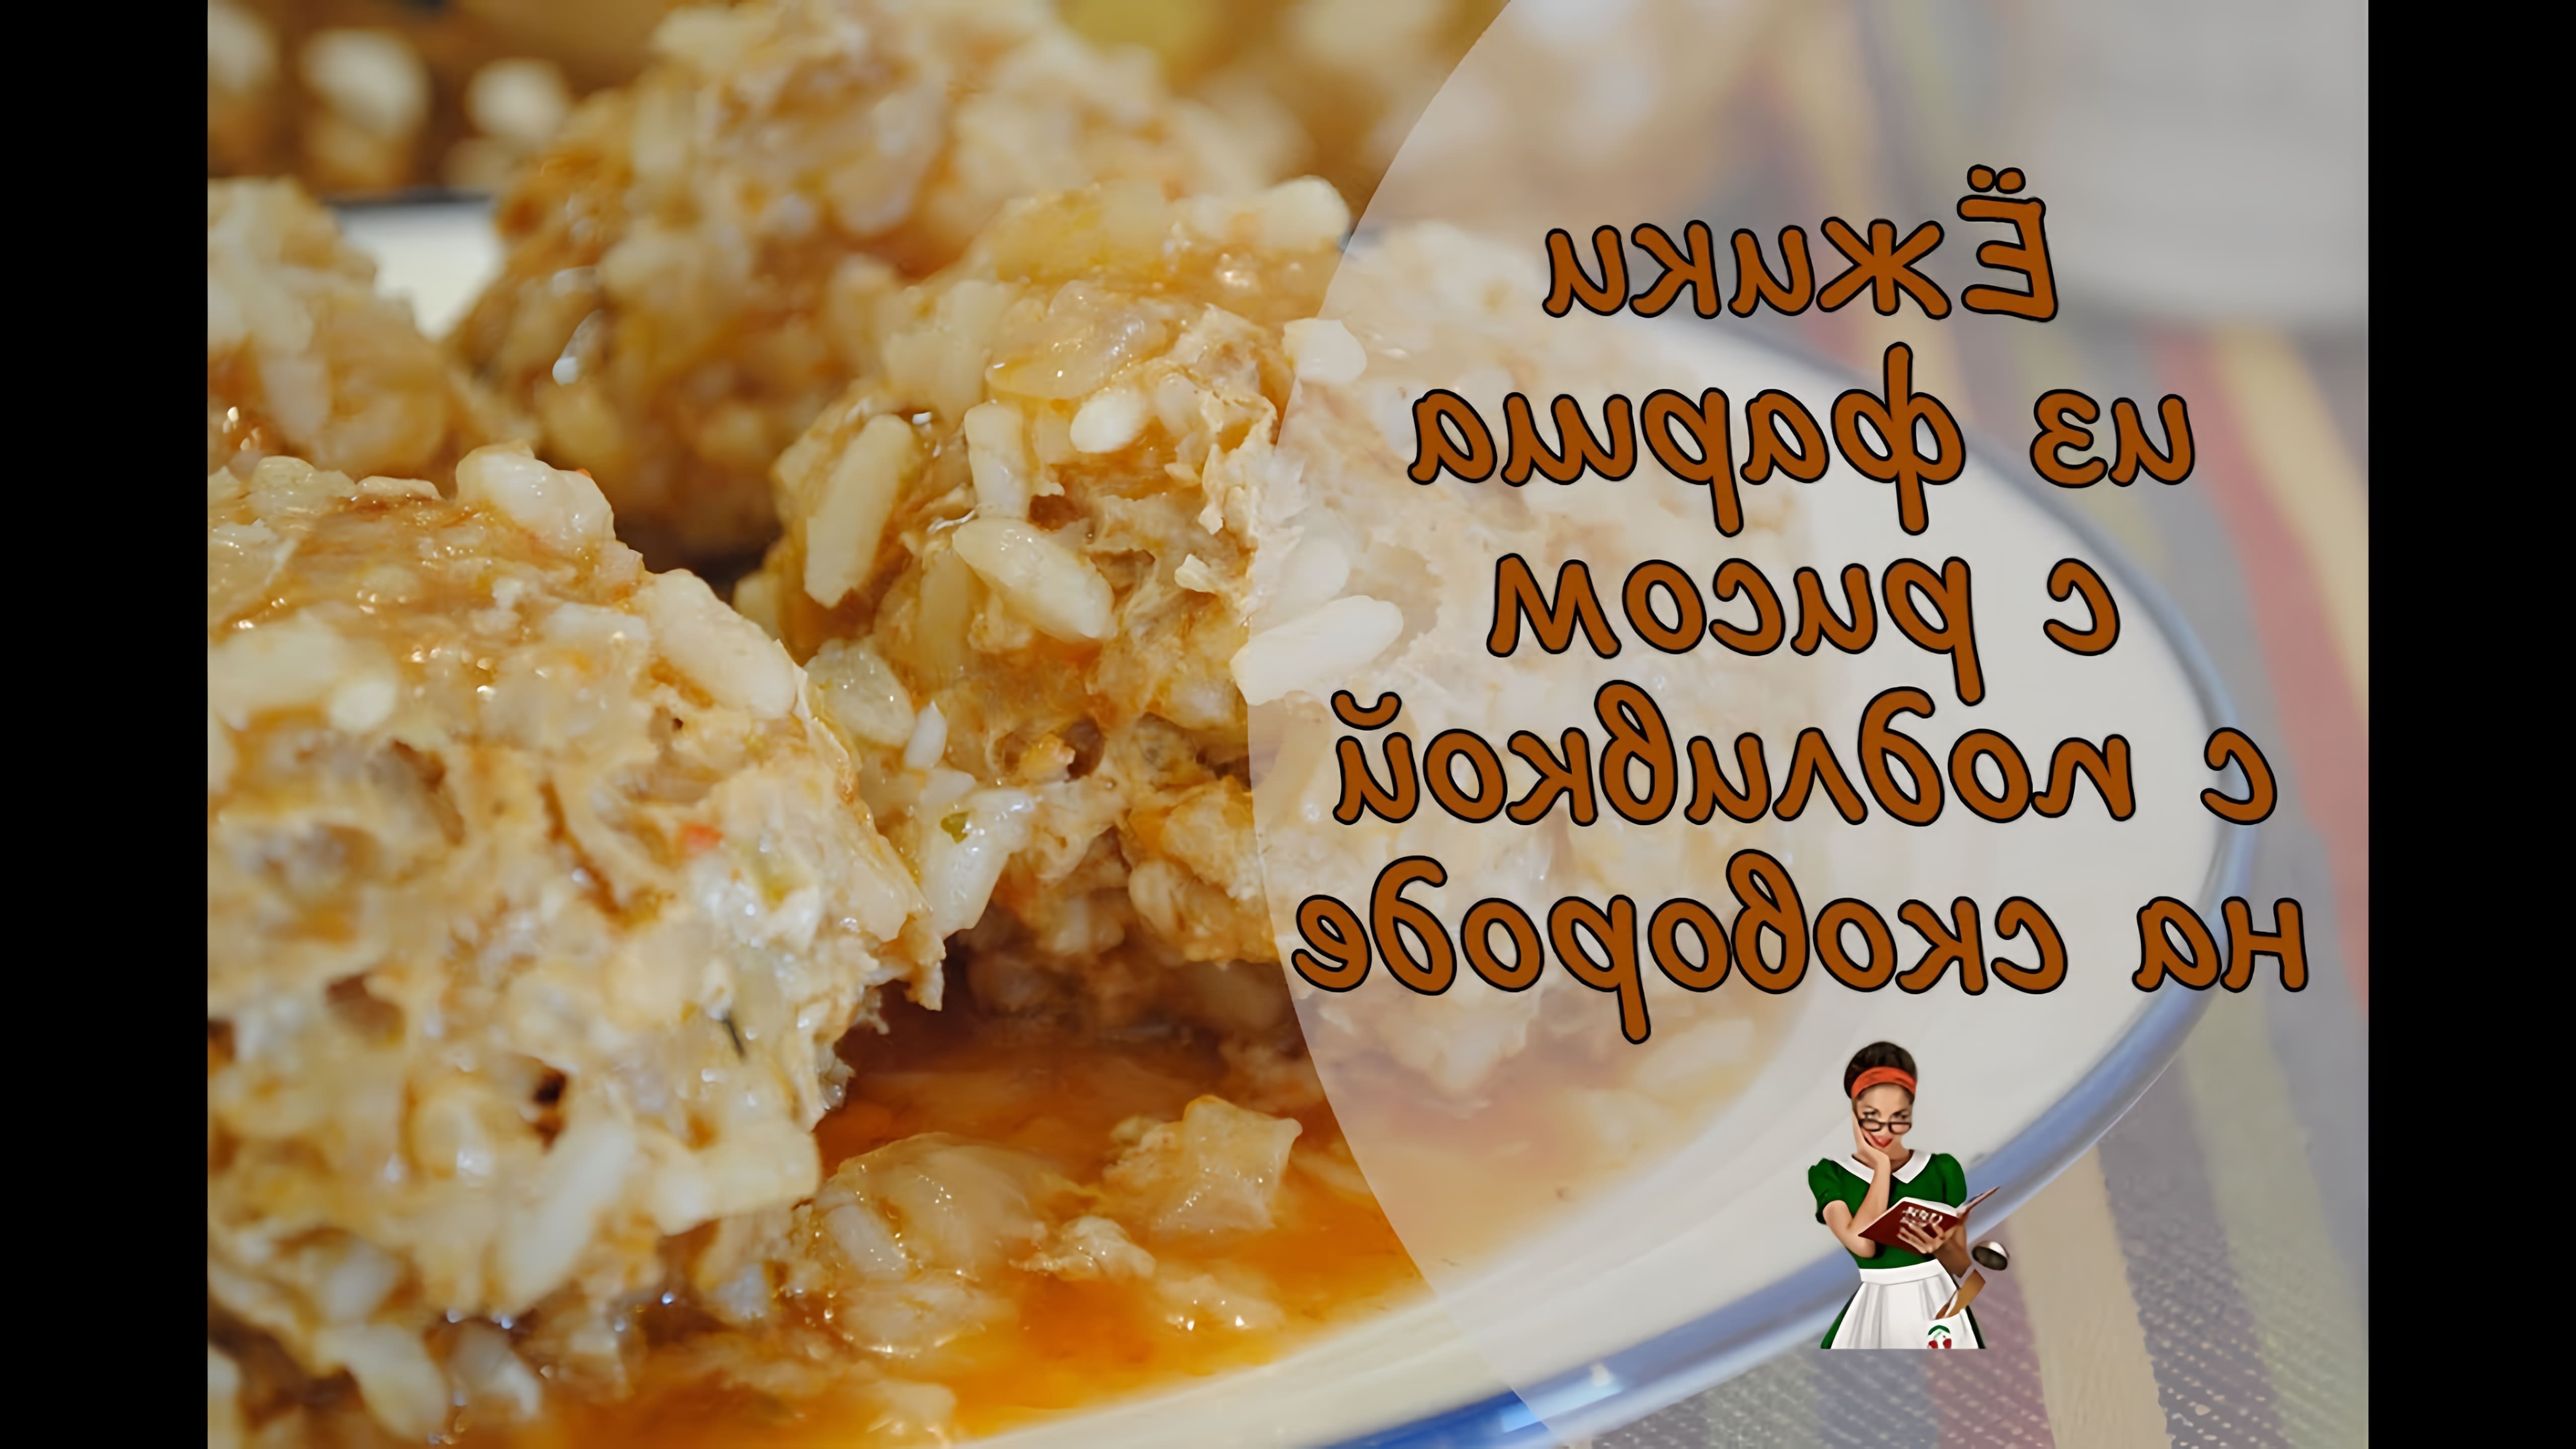 В этом видео демонстрируется рецепт приготовления ёжиков из фарша с рисом и подливкой на сковороде